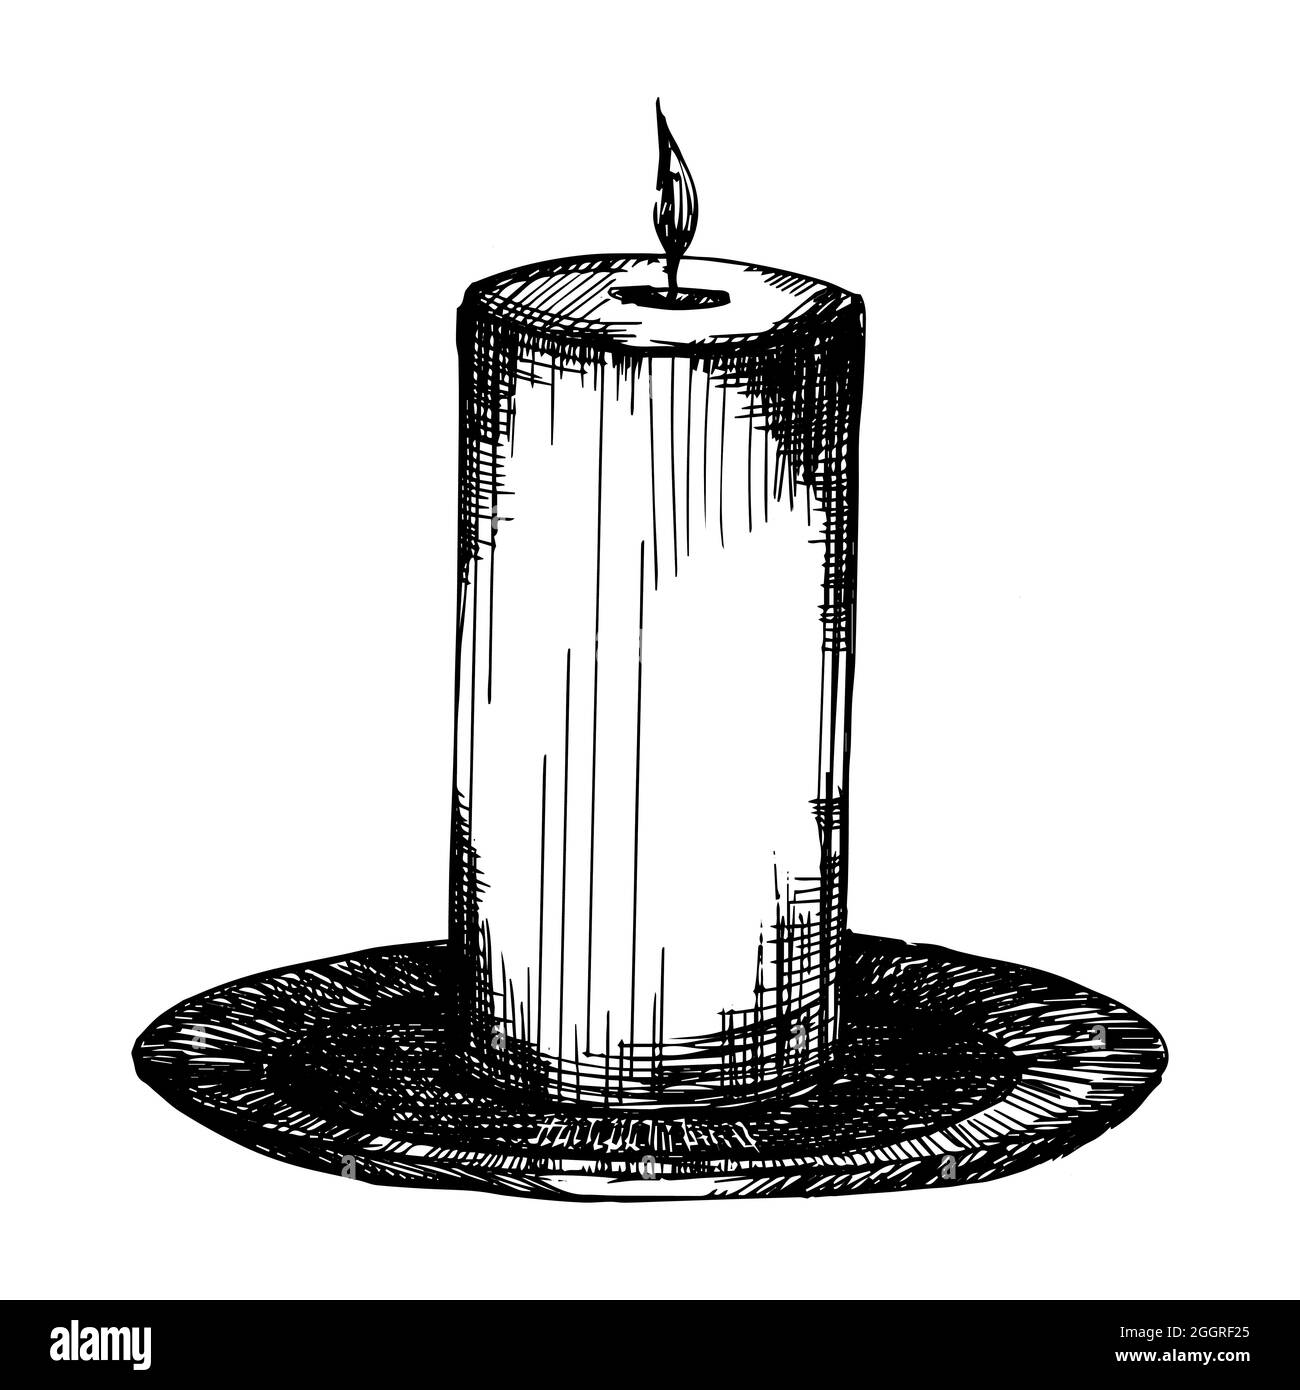 Kerze mit Feuer. vektor-Illustration Tinte auf weißem Hintergrund Skizze.  Handzeichnung Stock-Vektorgrafik - Alamy